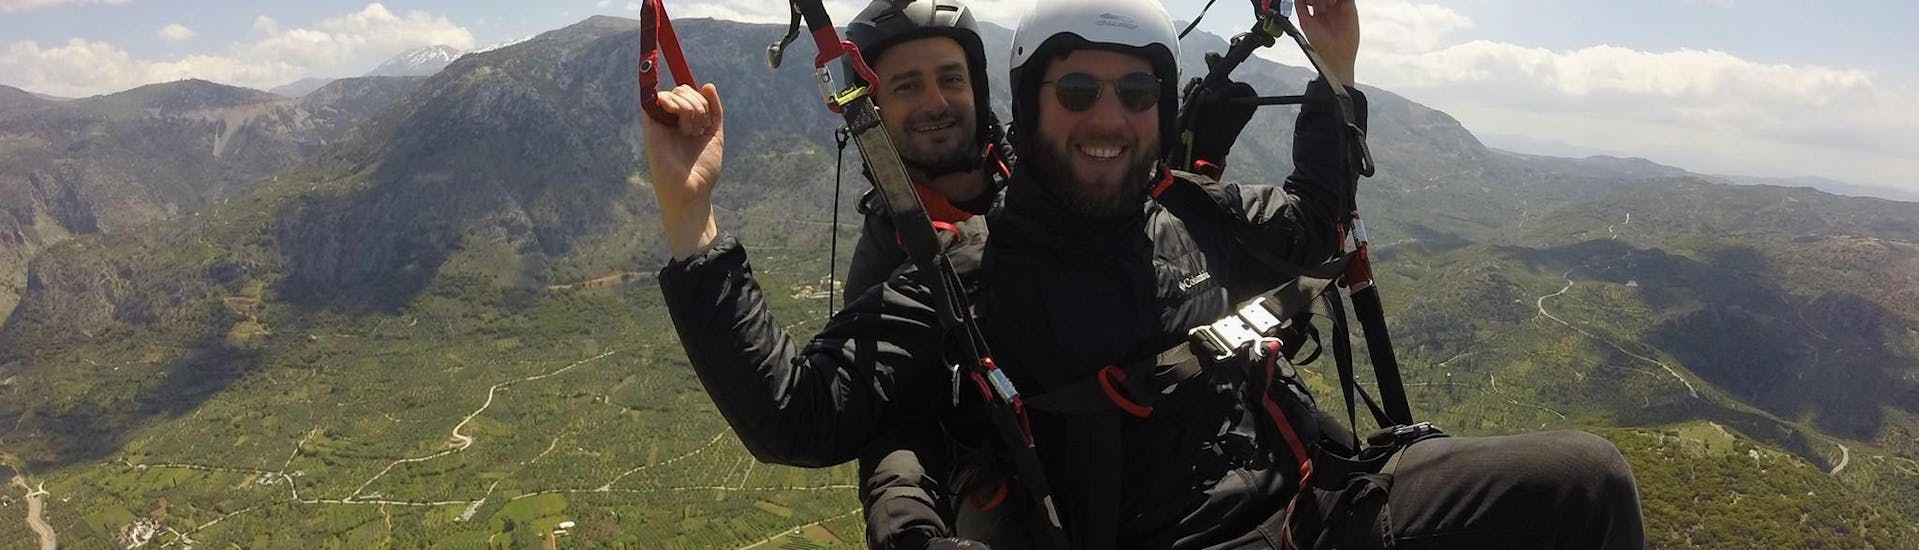 Beim Tandem Paragliding über Chania freut sich ein Mann, der mit einem zertifizierten Tandempiloten von Cretan Paragliding sicher fliegt.